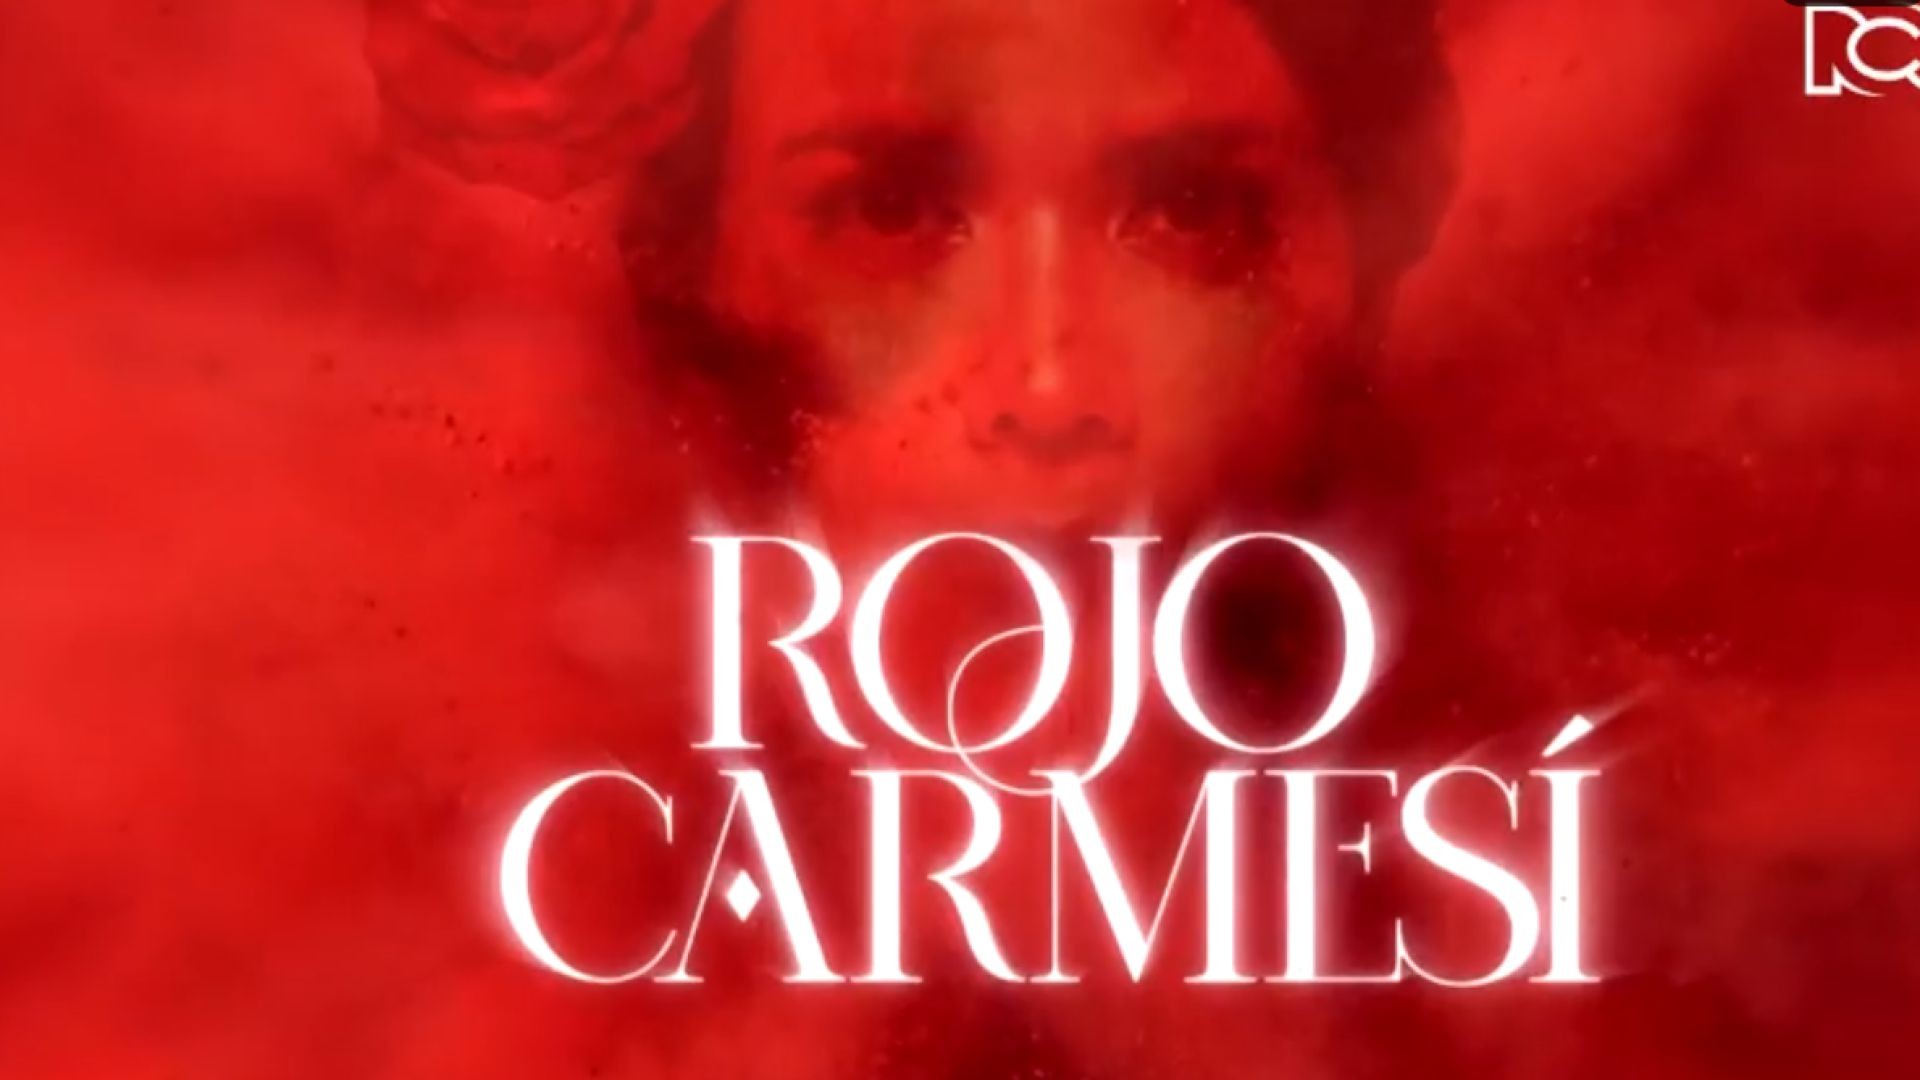 Rojo Carmesí Capitulo 6 Completo - Rojo Carmesí telenovela